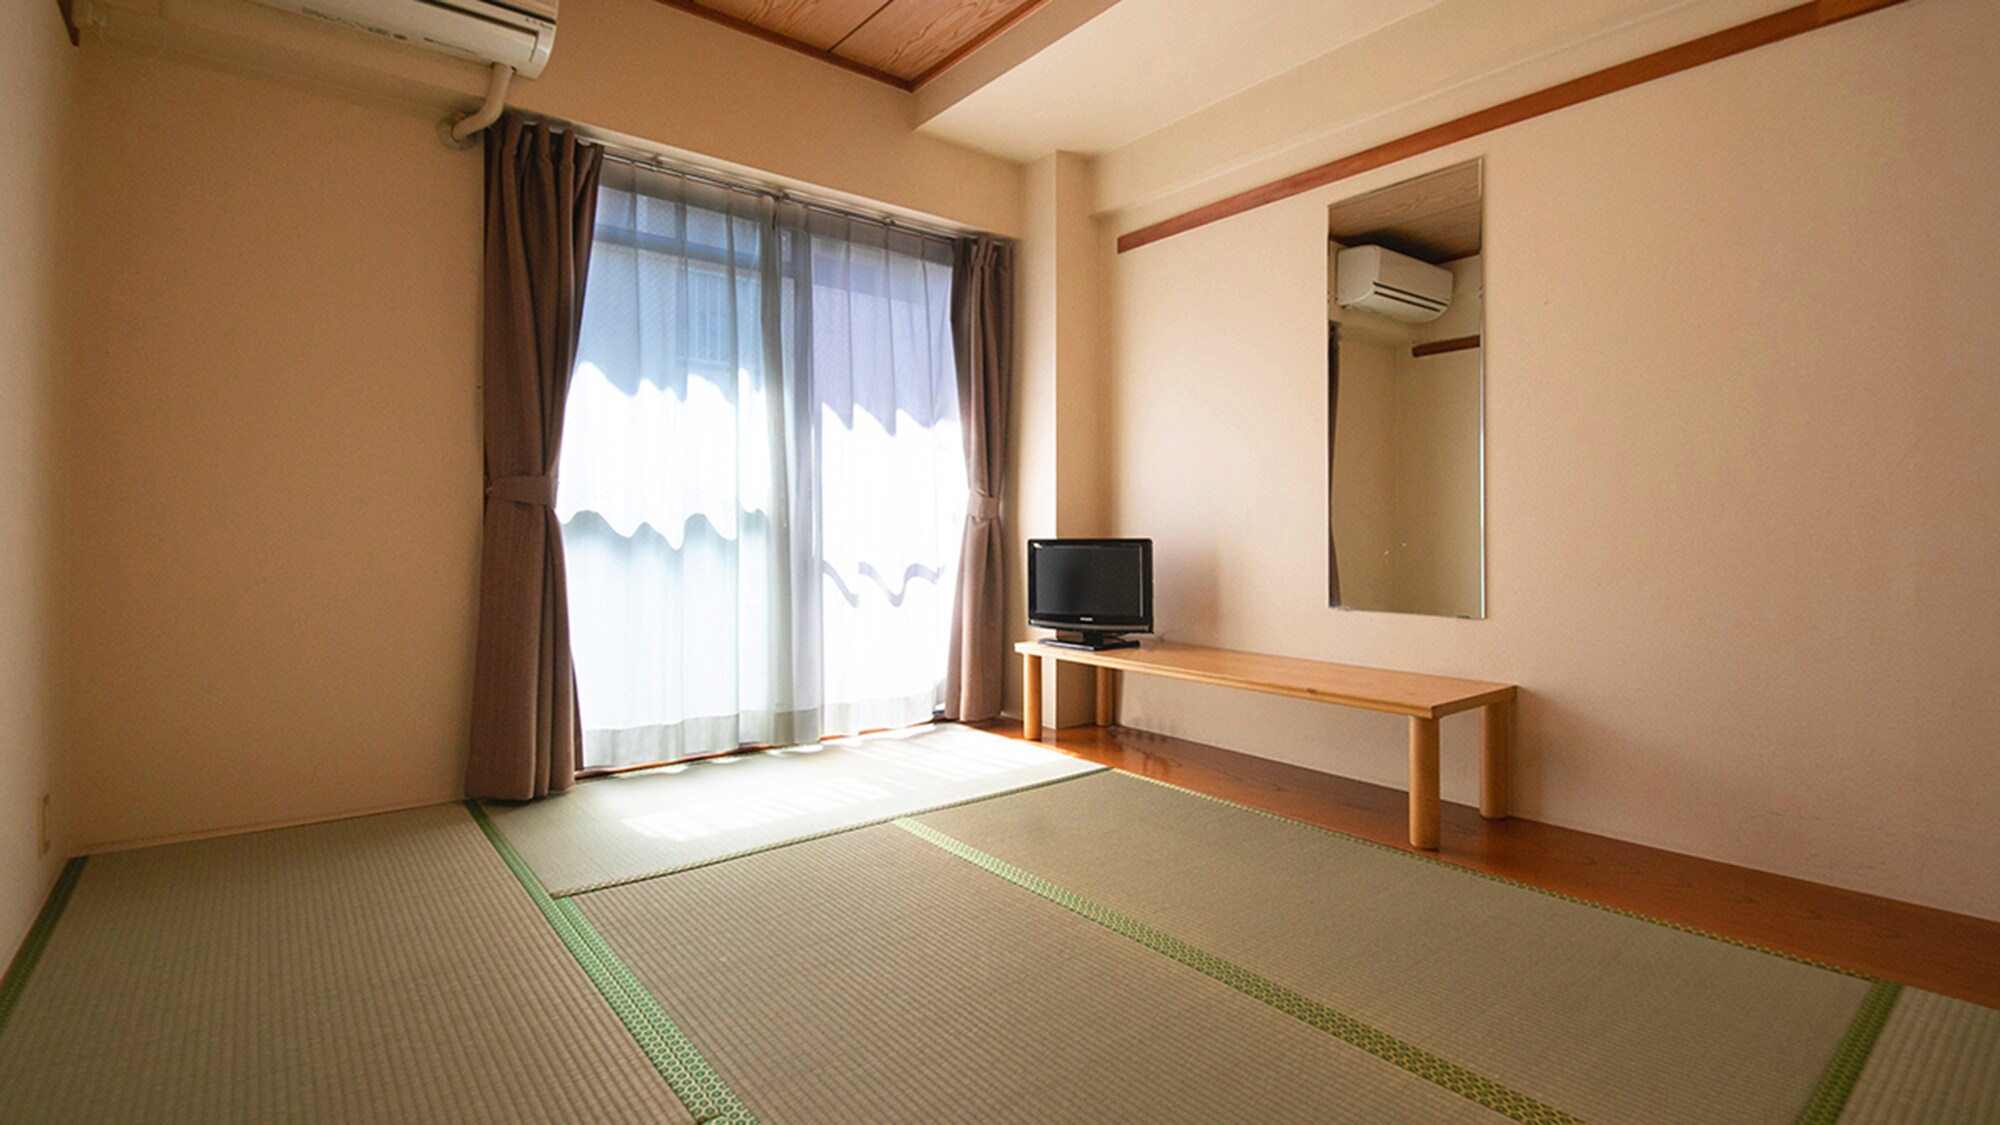 ■ แอนเน็กซ์ ห้องสไตล์ญี่ปุ่น 6 เสื่อทาทามิ ■ ห้องอาบน้ำและห้องส้วมก็มีให้ในห้อง